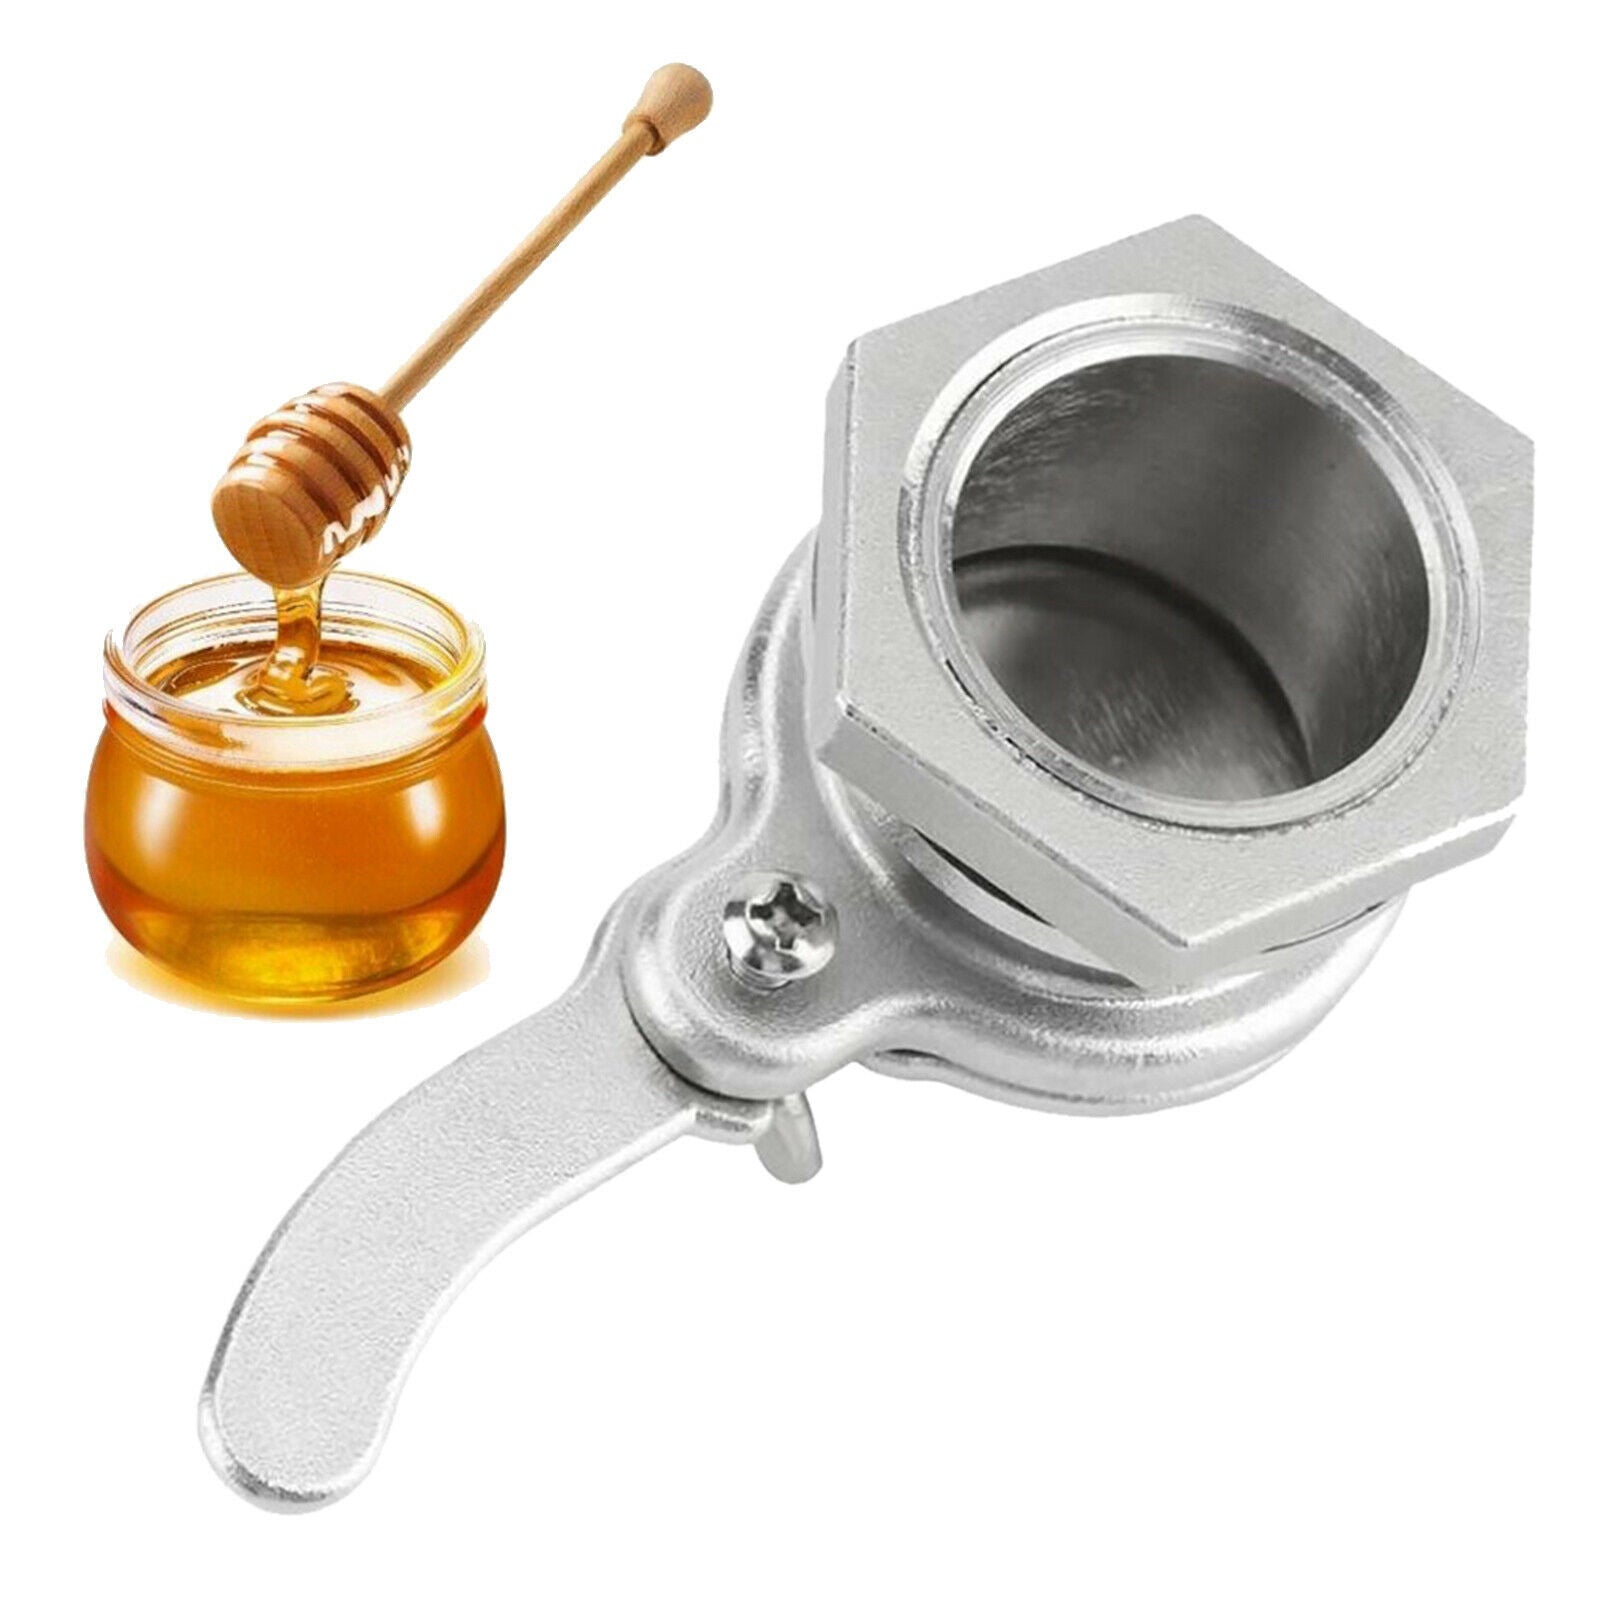 Food Grade Stainless Steel Honey Gate Valve Honey Extractor Beekeeping Tool